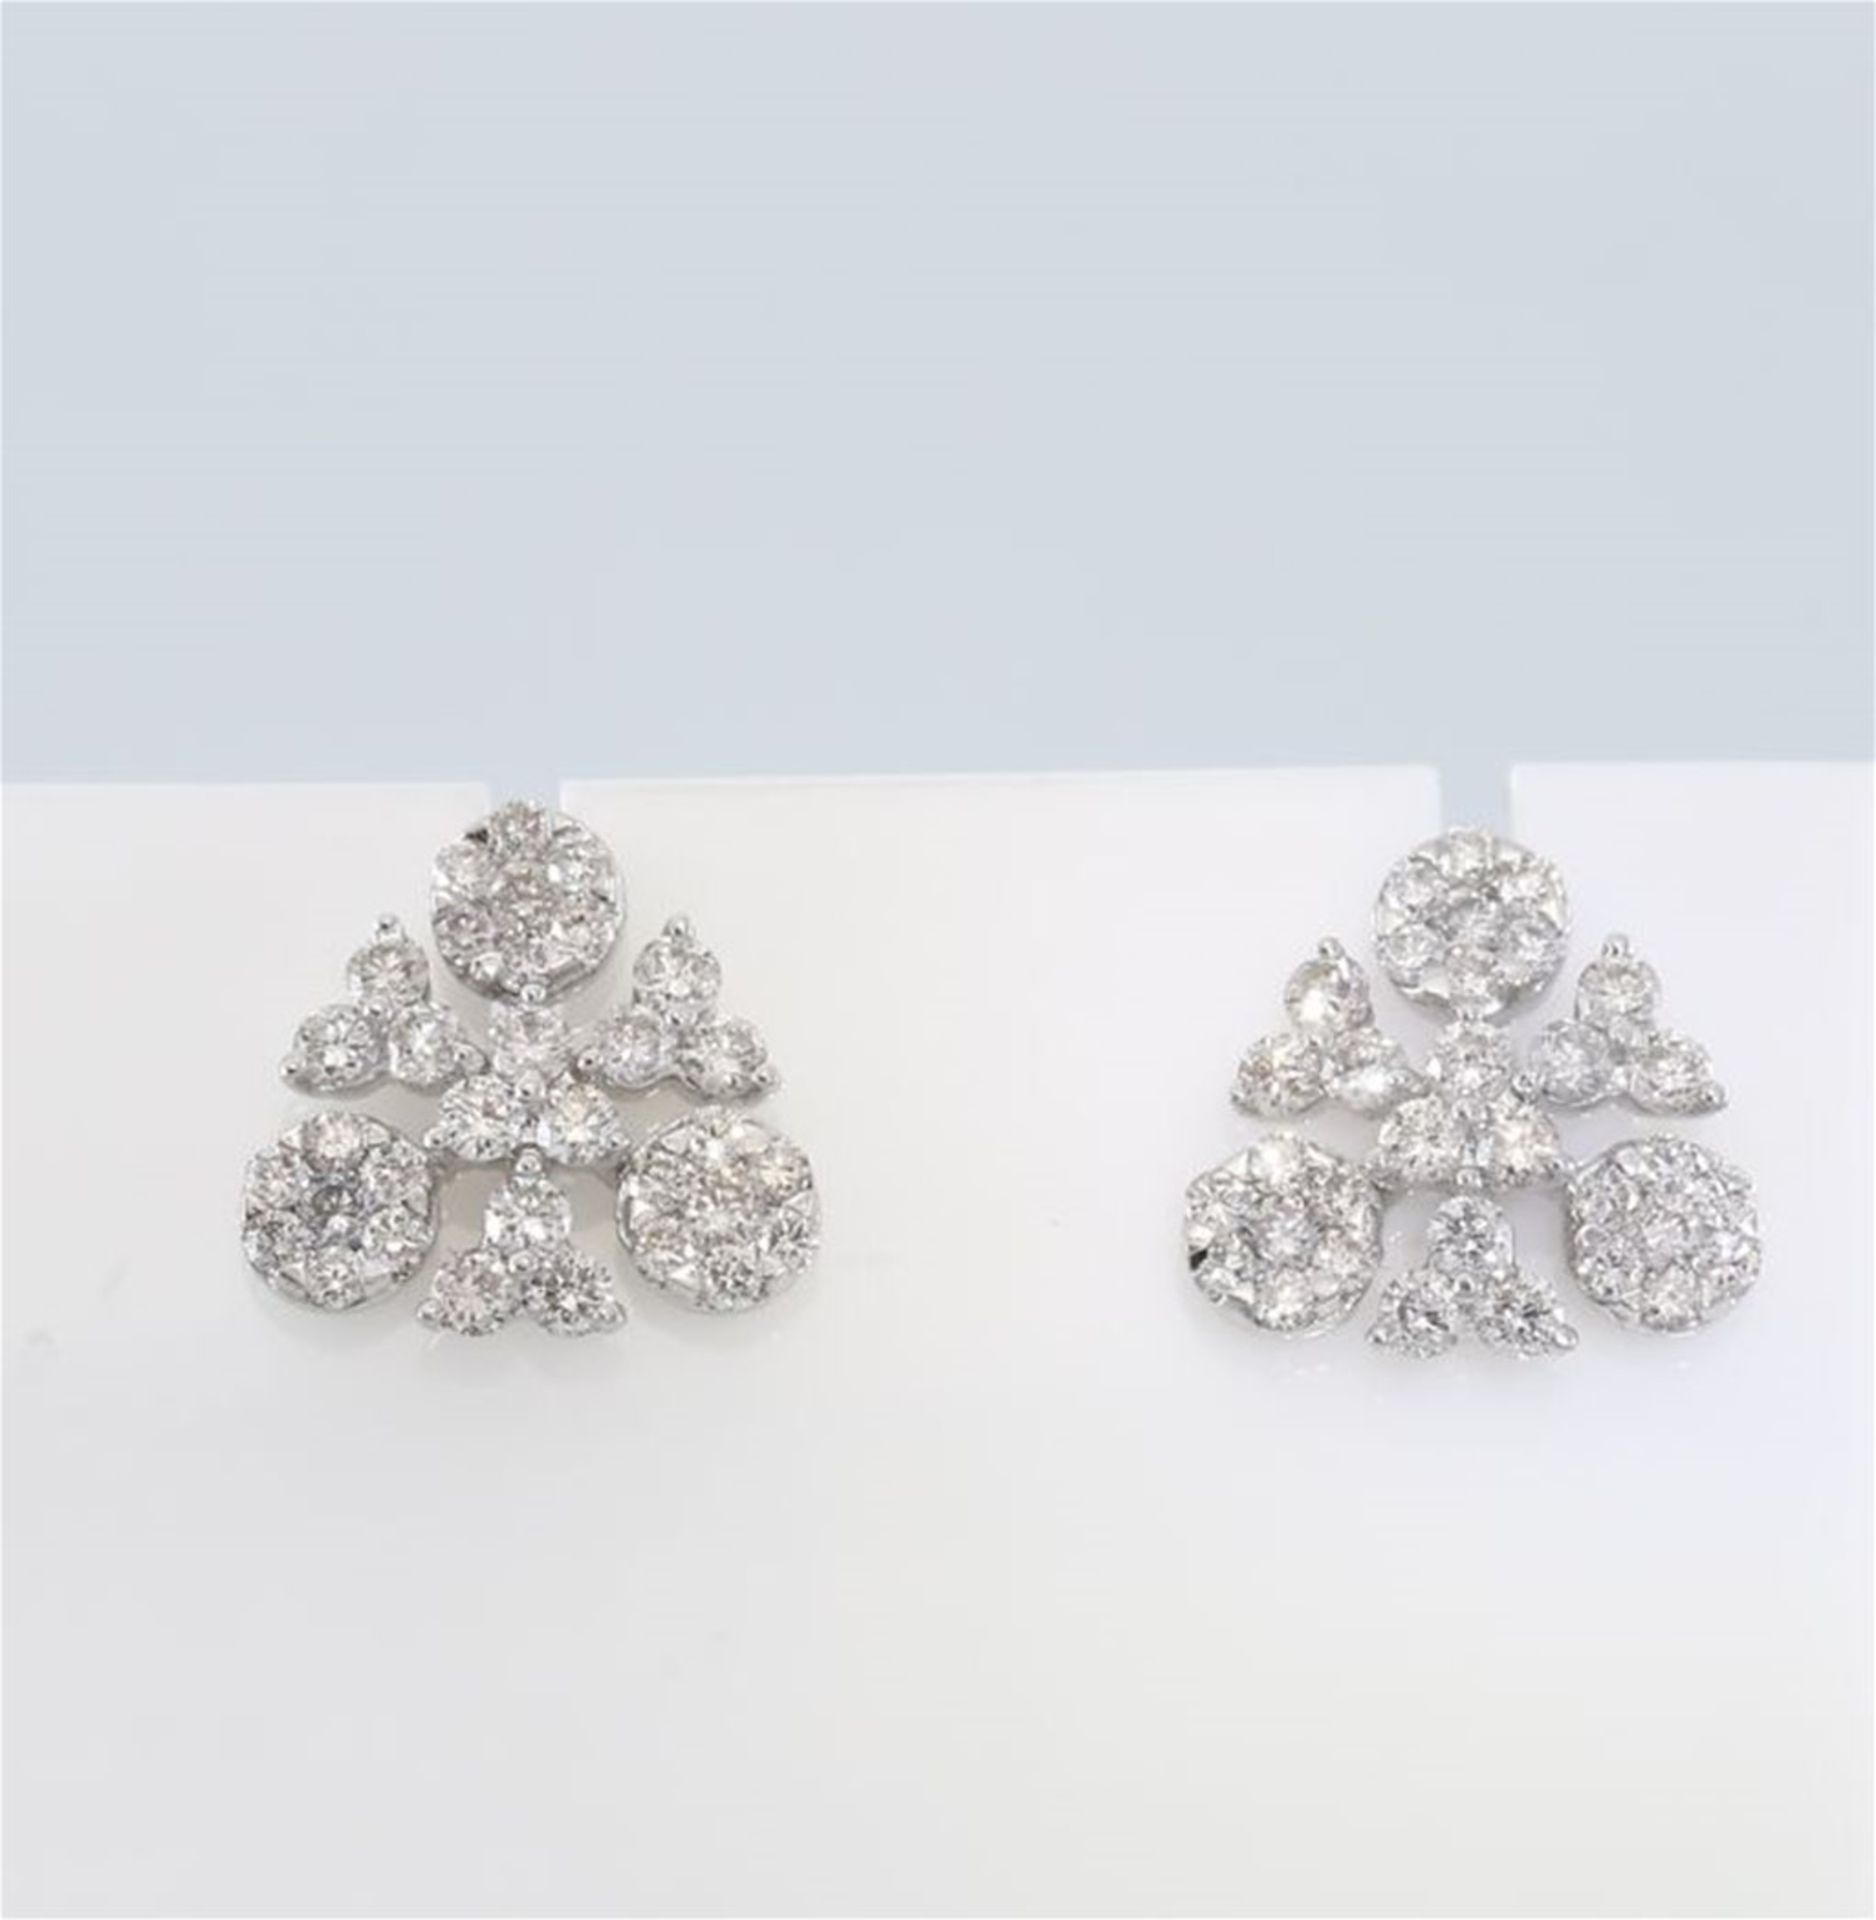 IGI Certified 18 K / 750 White Gold Diamond Earrings - Image 3 of 7